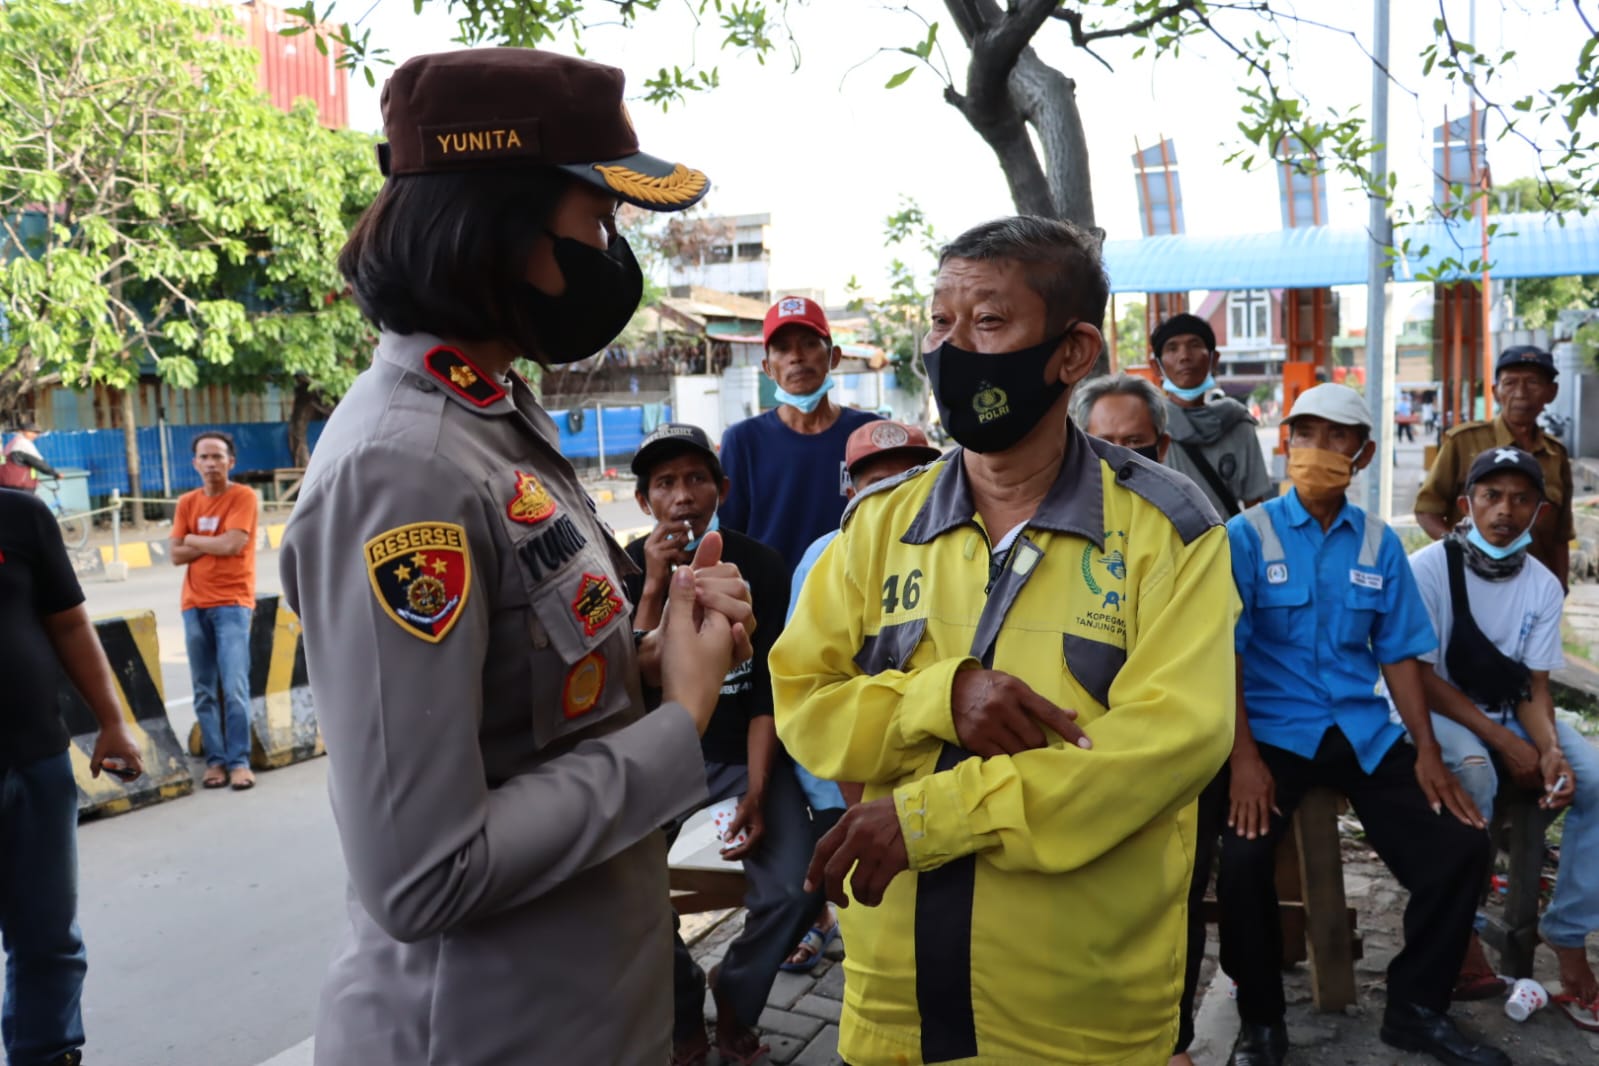 Pakobar Patroli Kopi Bareng Polres Pelabuhan Tanjung Priok Bersama Buruh dan Komunitas Ojek di Pos 8